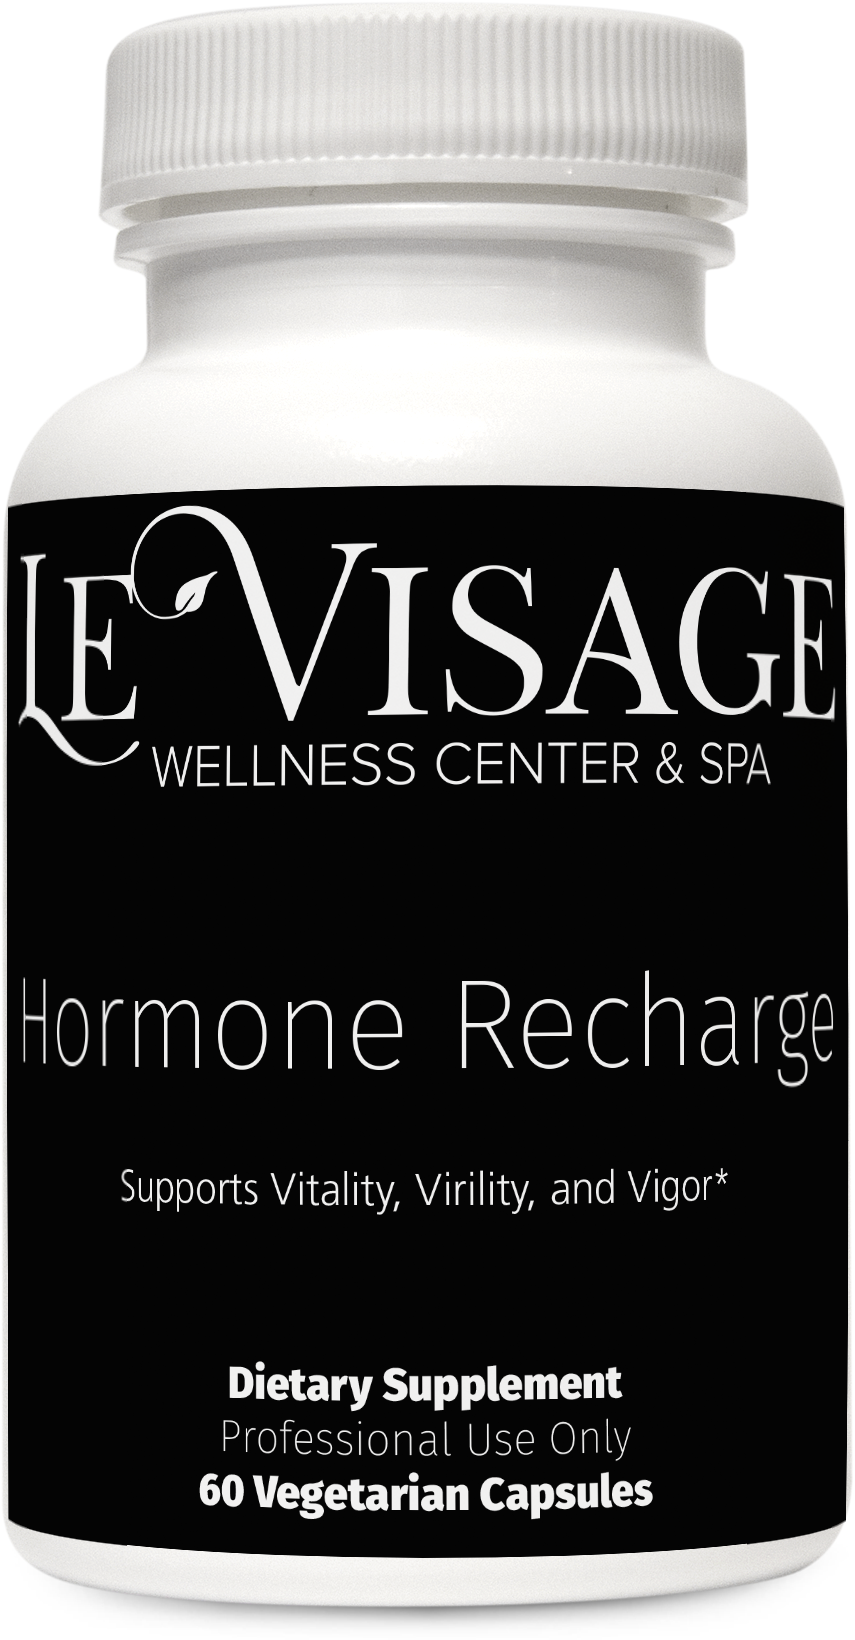 Hormone Recharge 60c